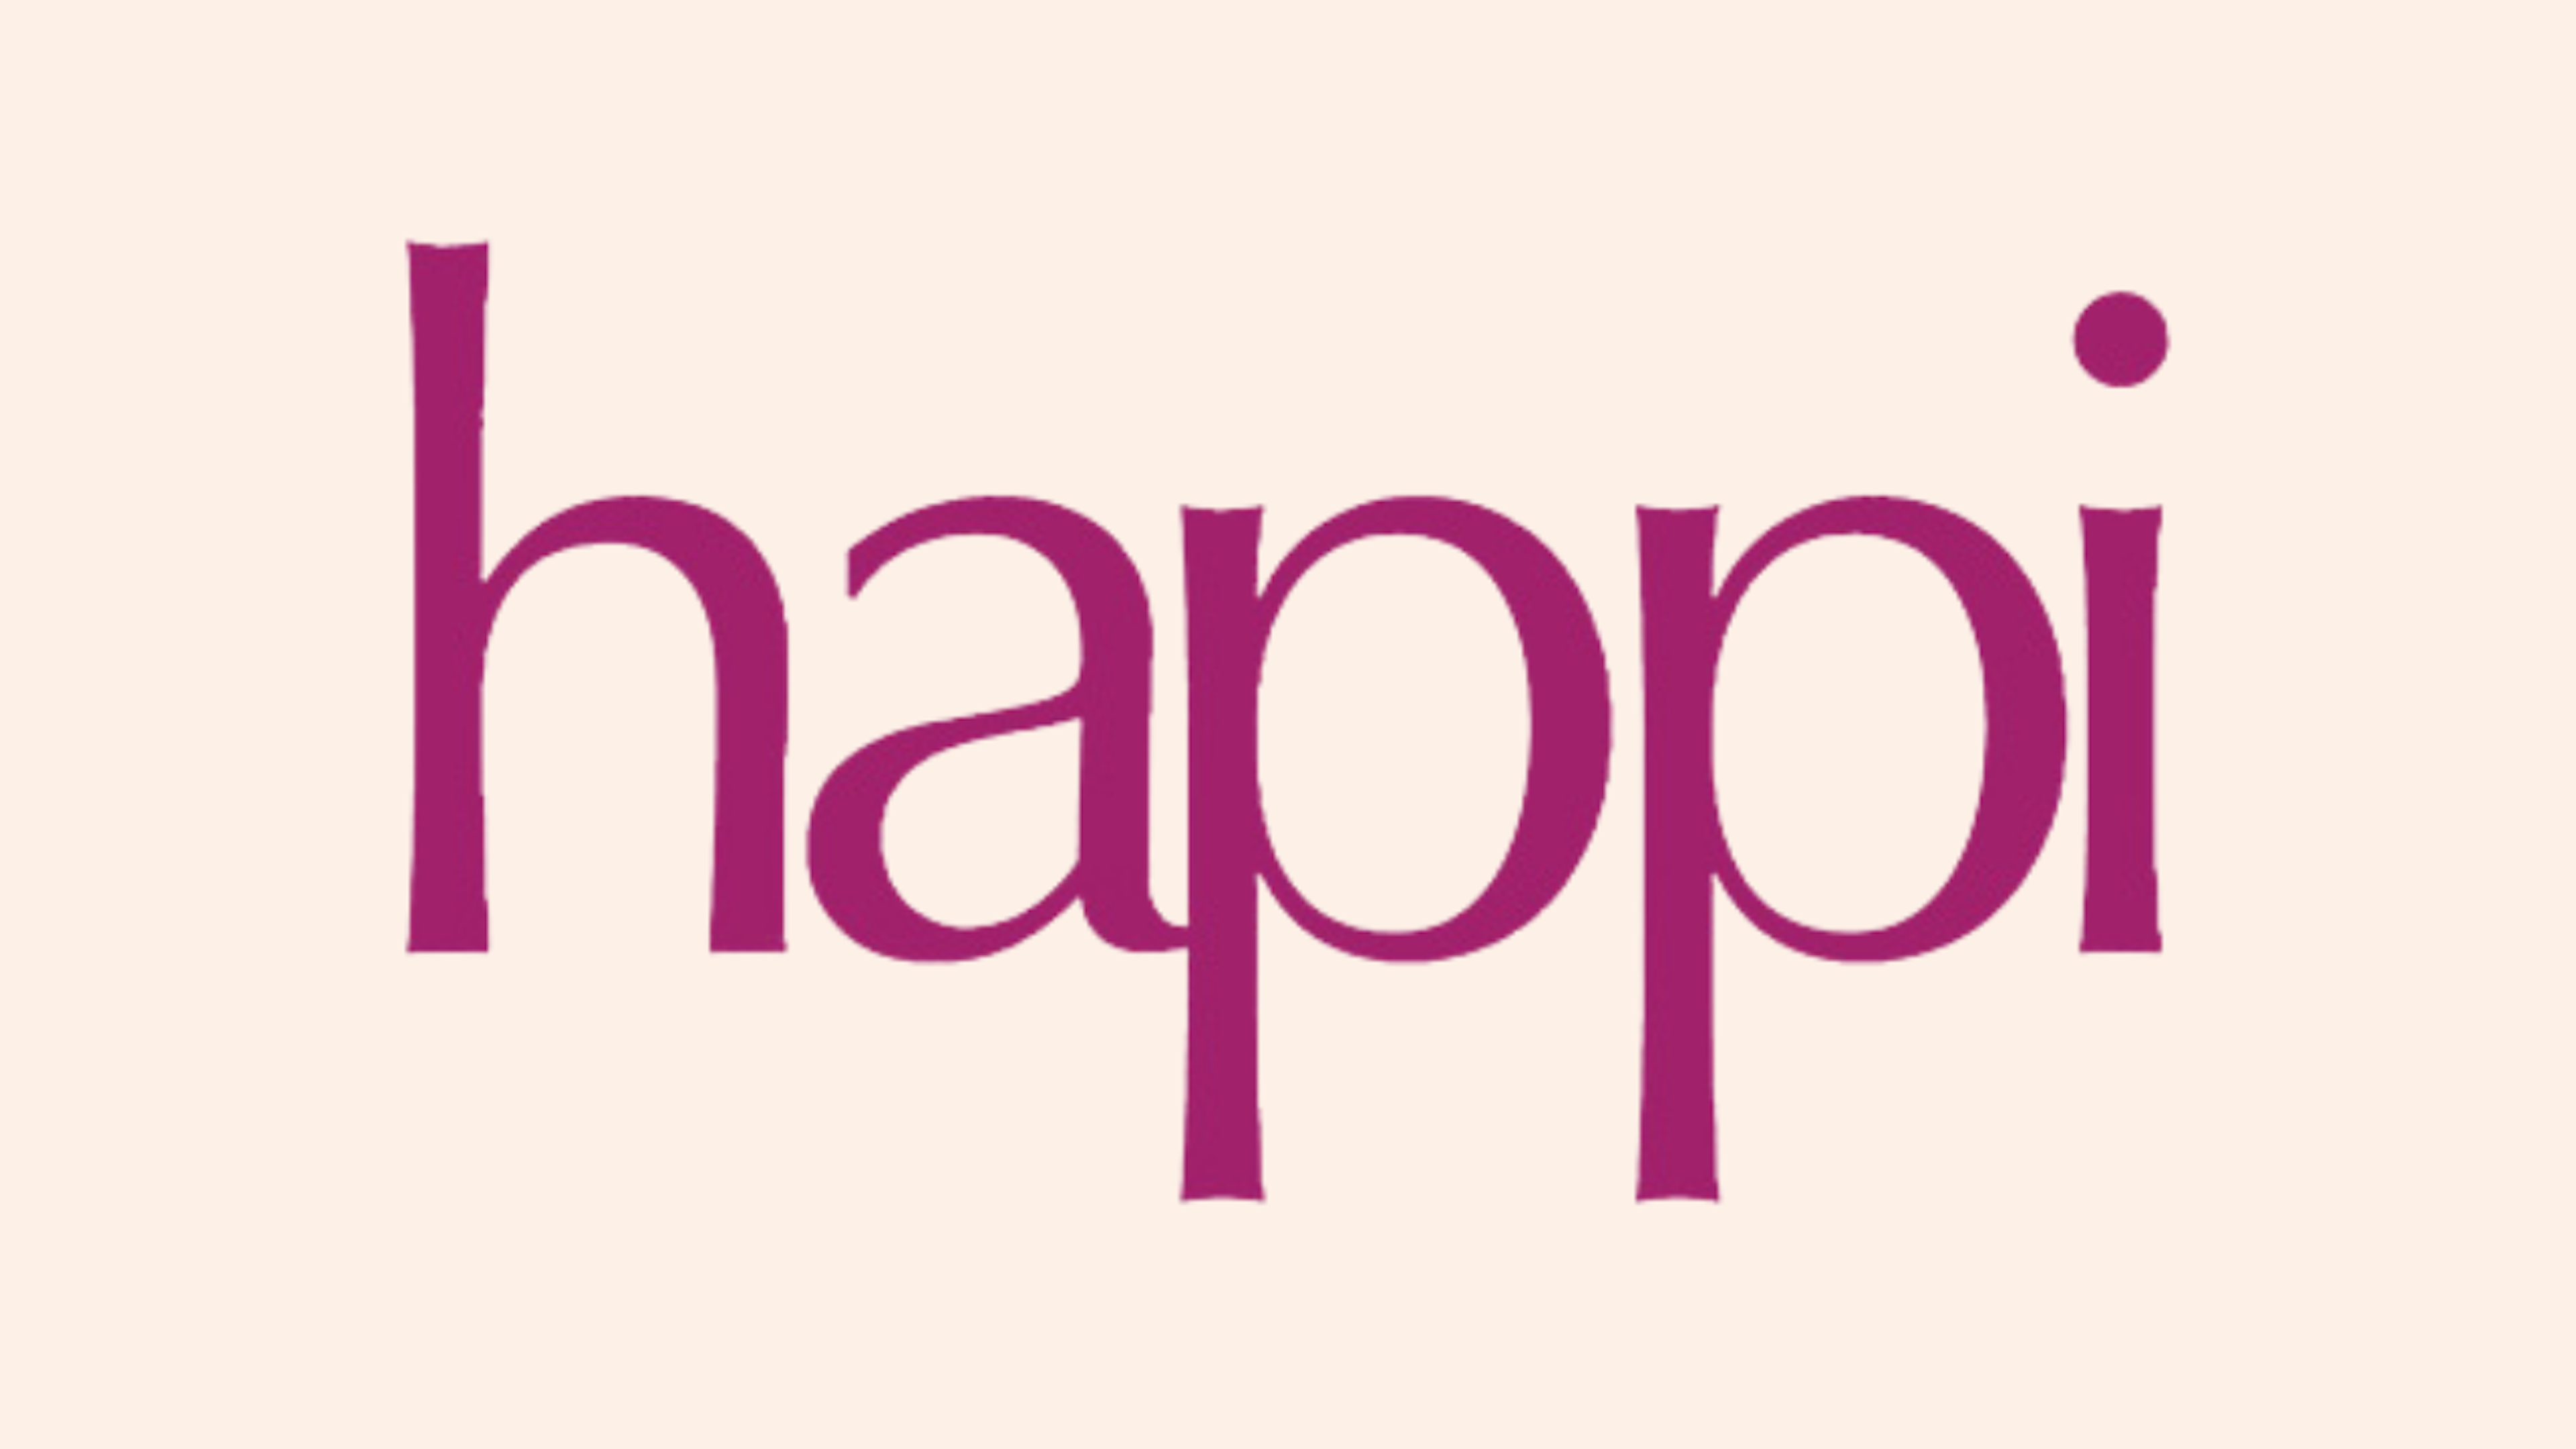 Happi logo